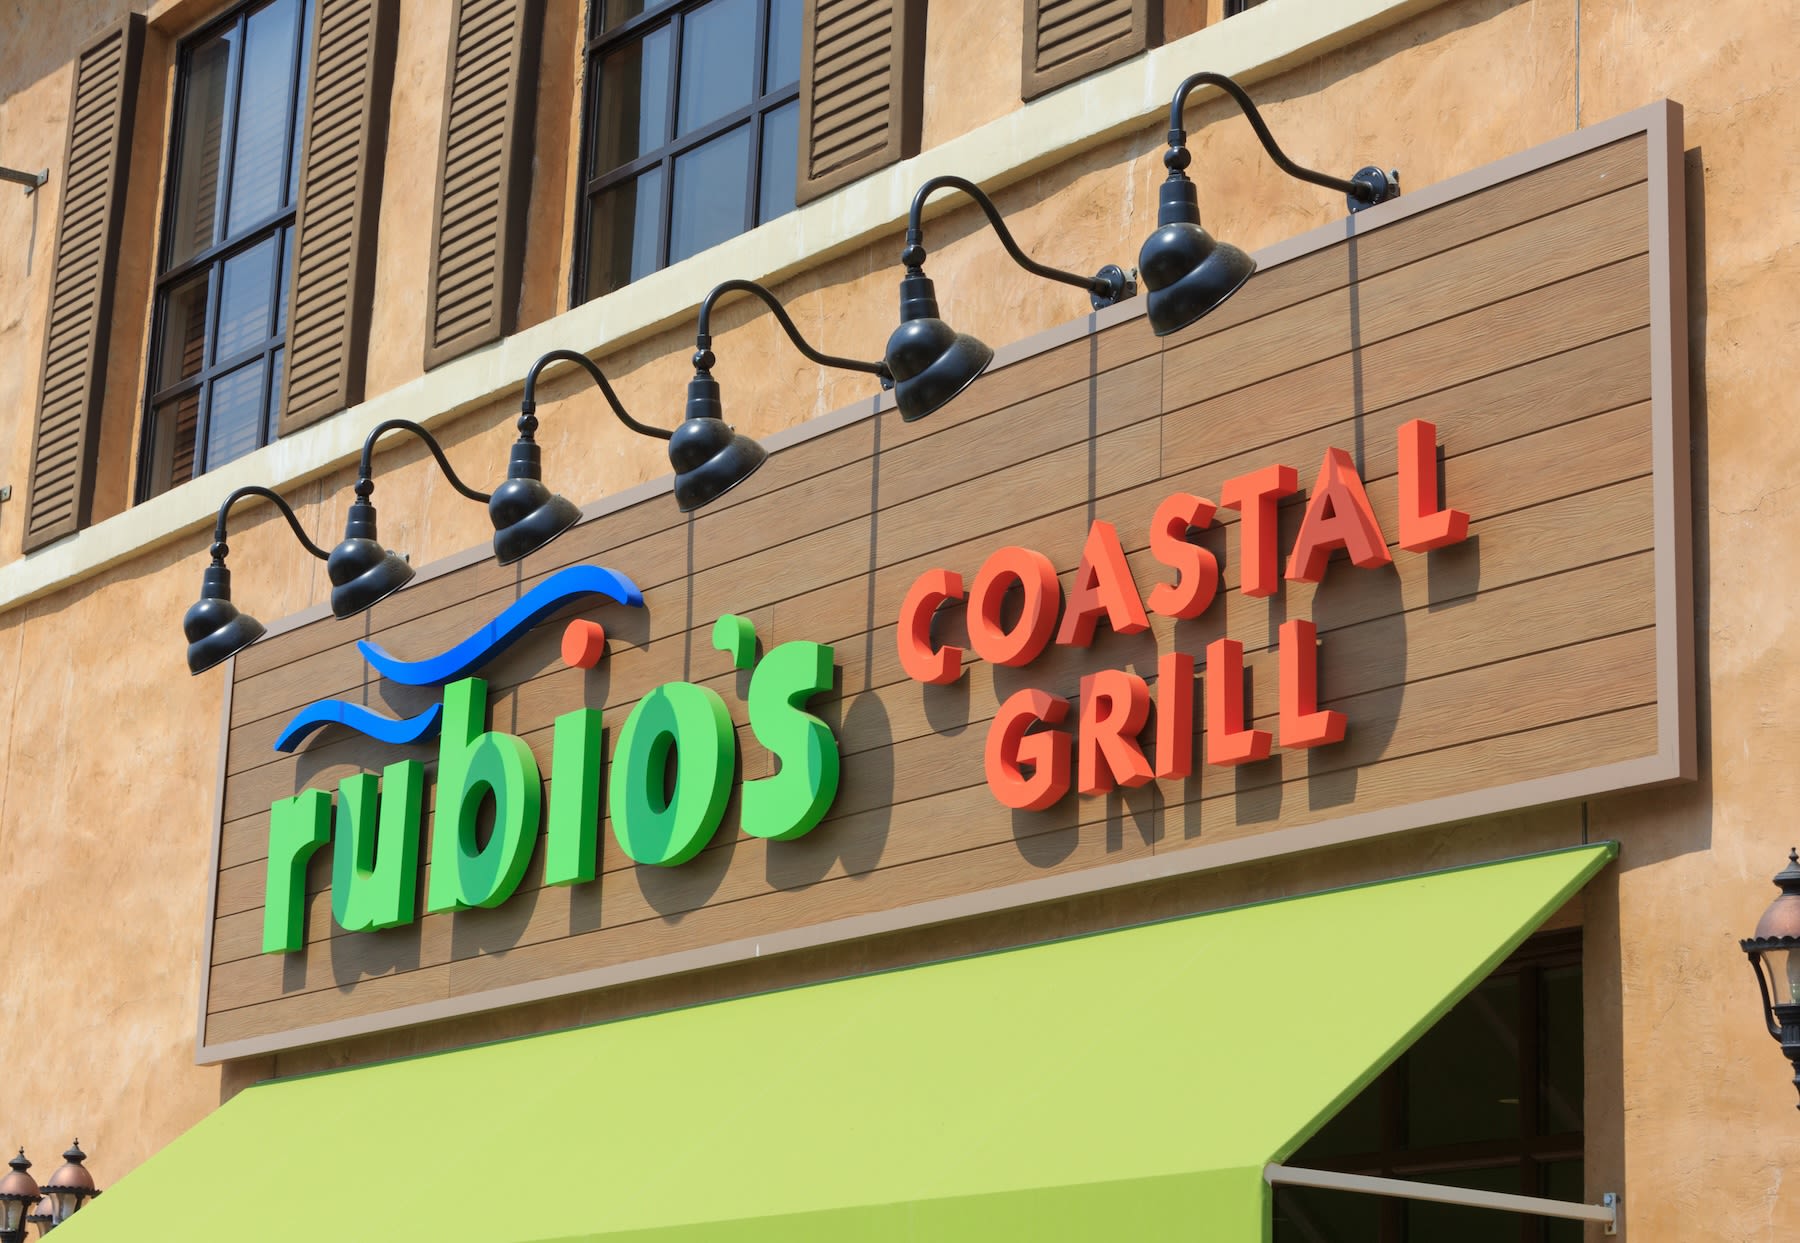 Rubio's closes 48 restaurants in California